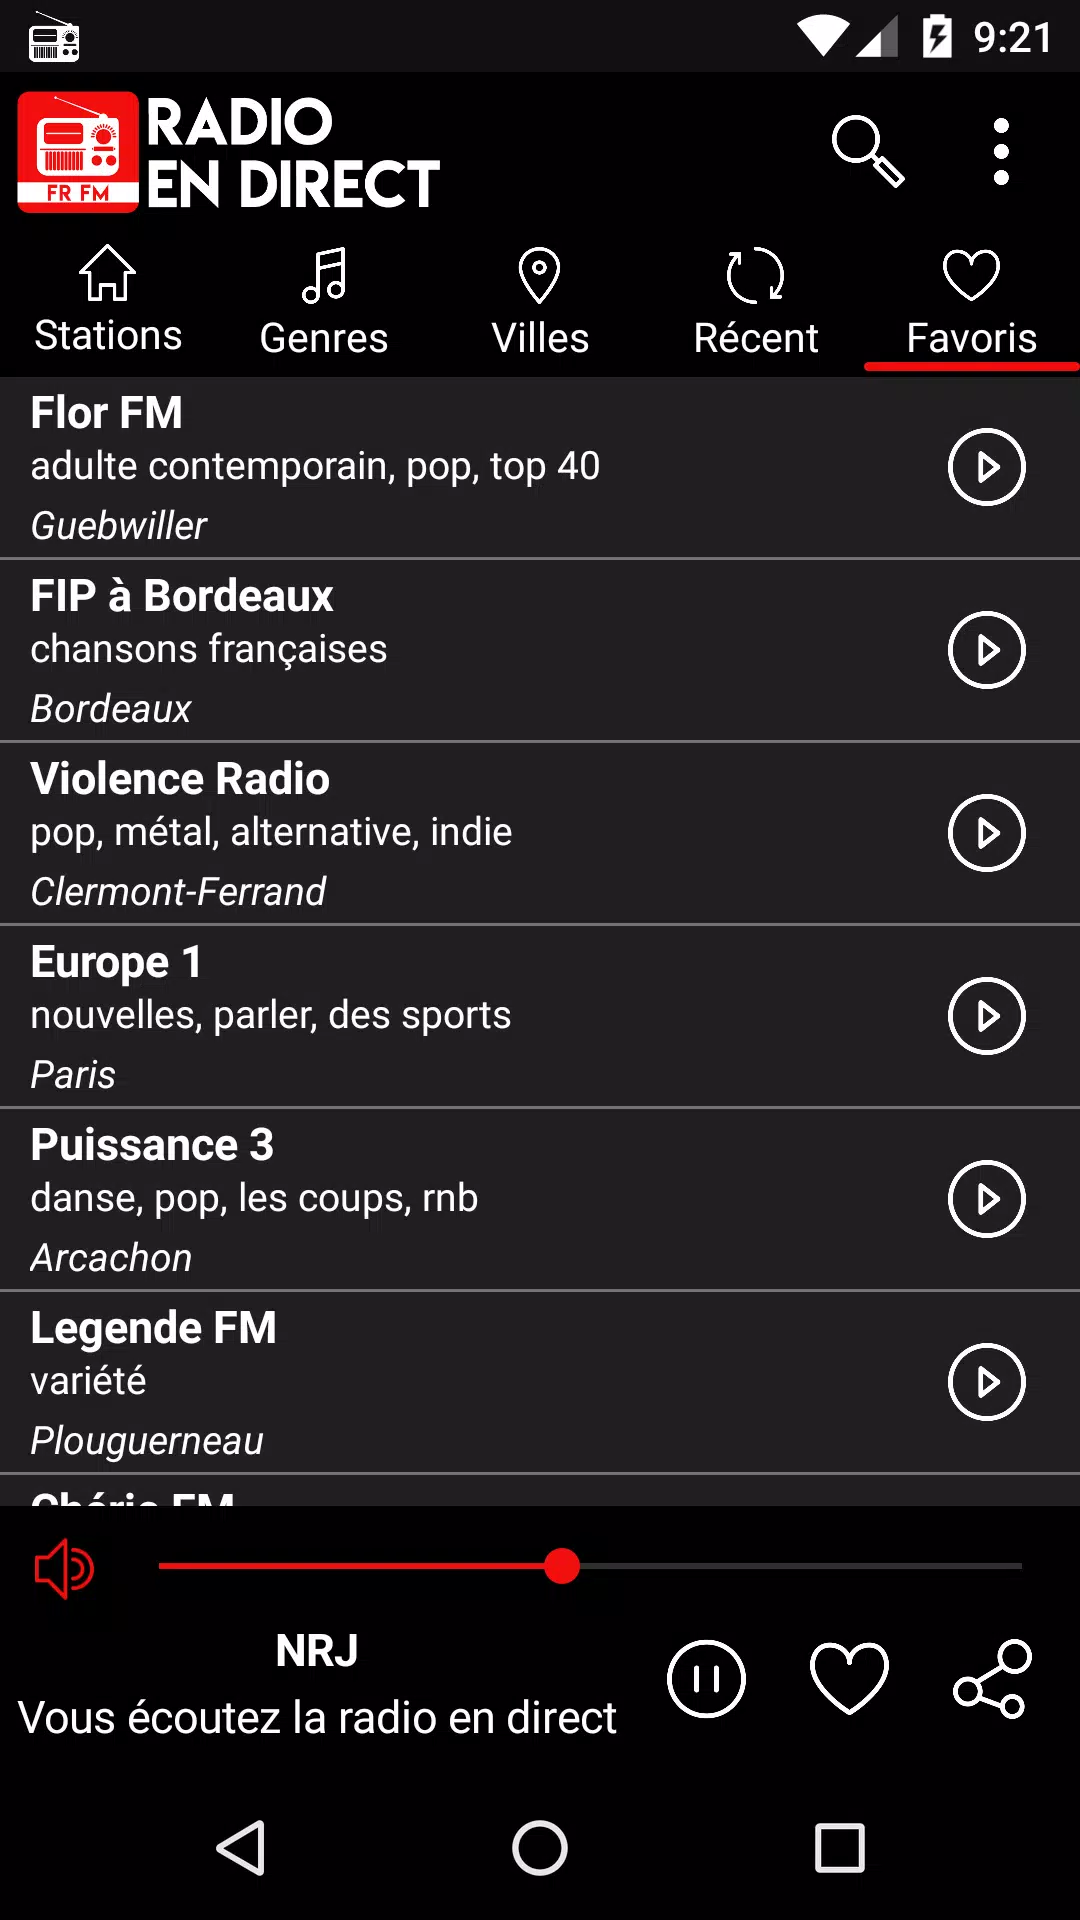 Radio en ligne France: Live FM for Android - APK Download